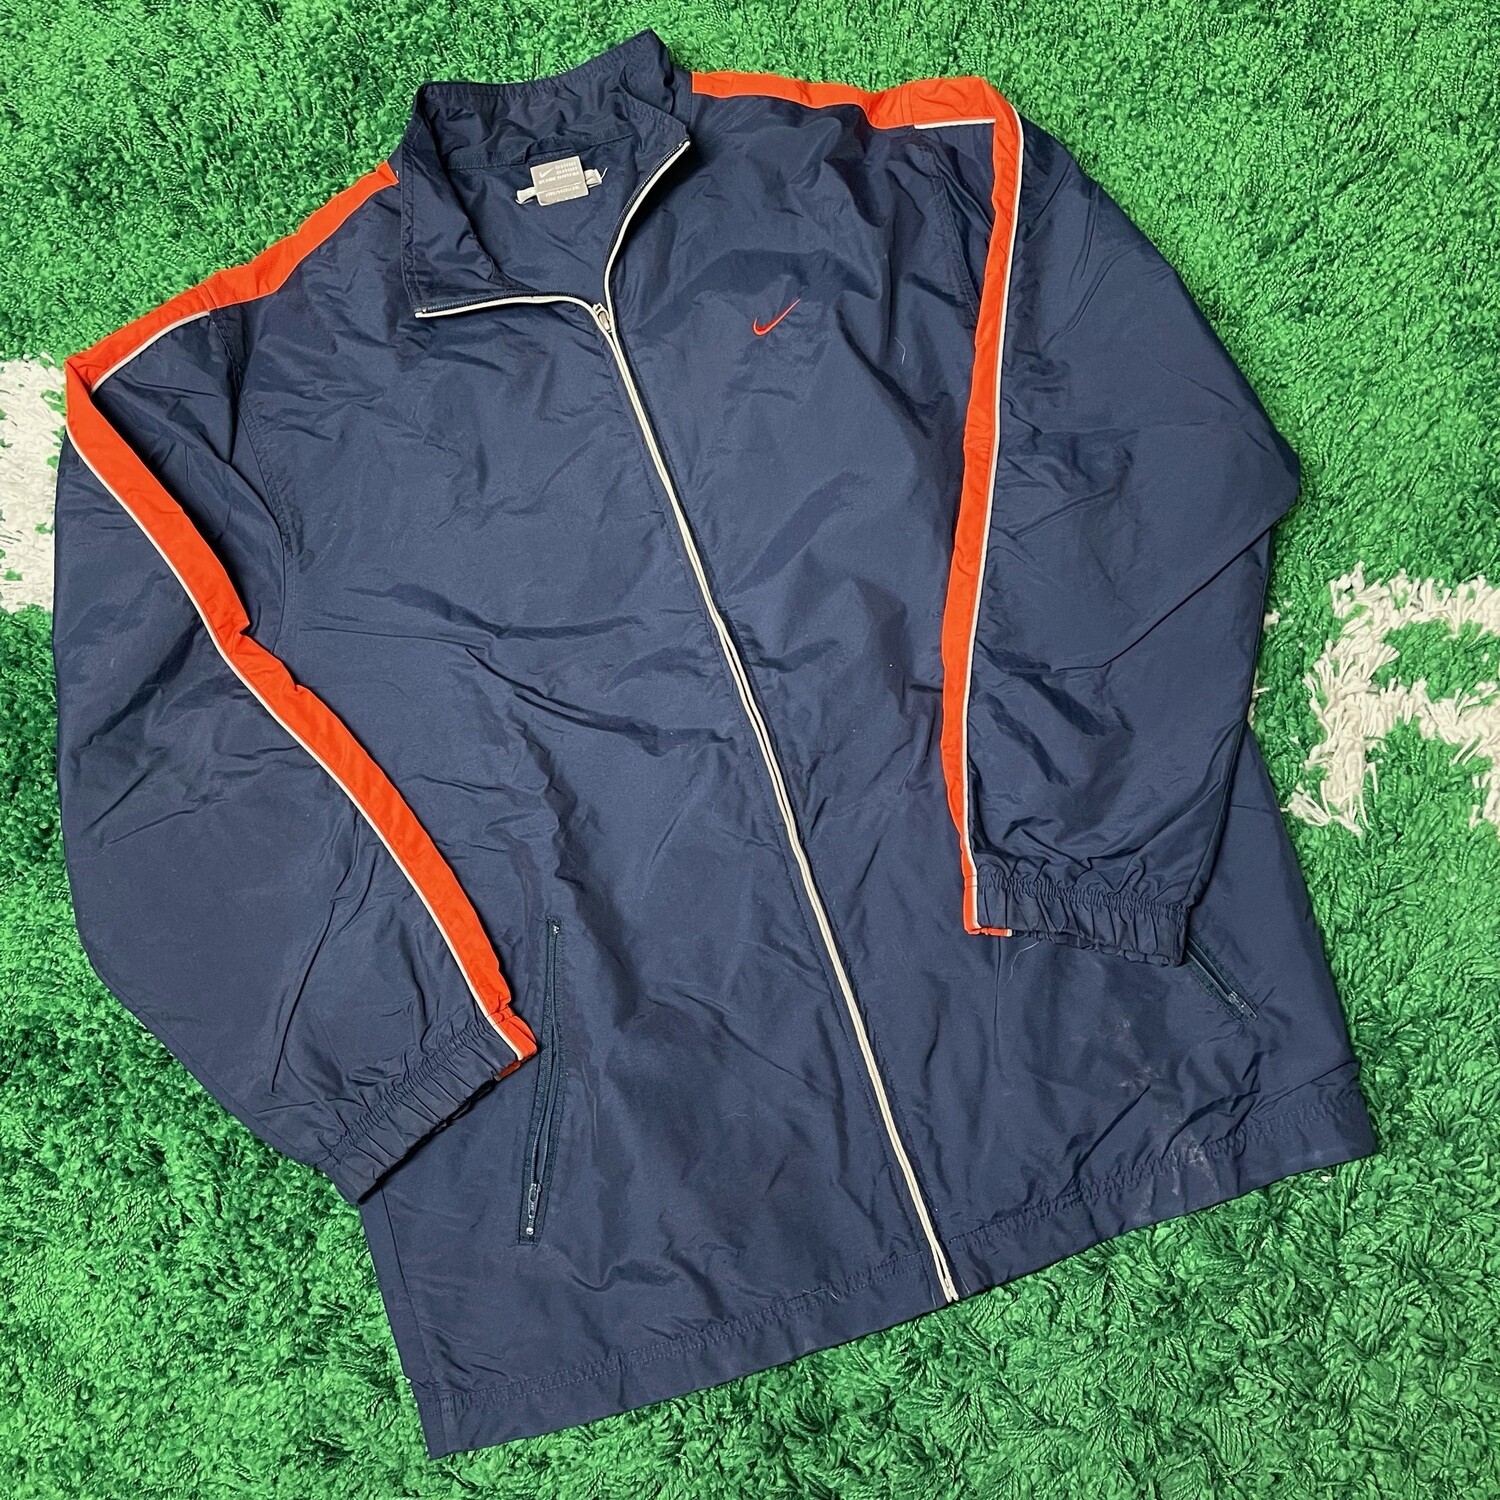 Nike Jacket Navy/Orange Size Large